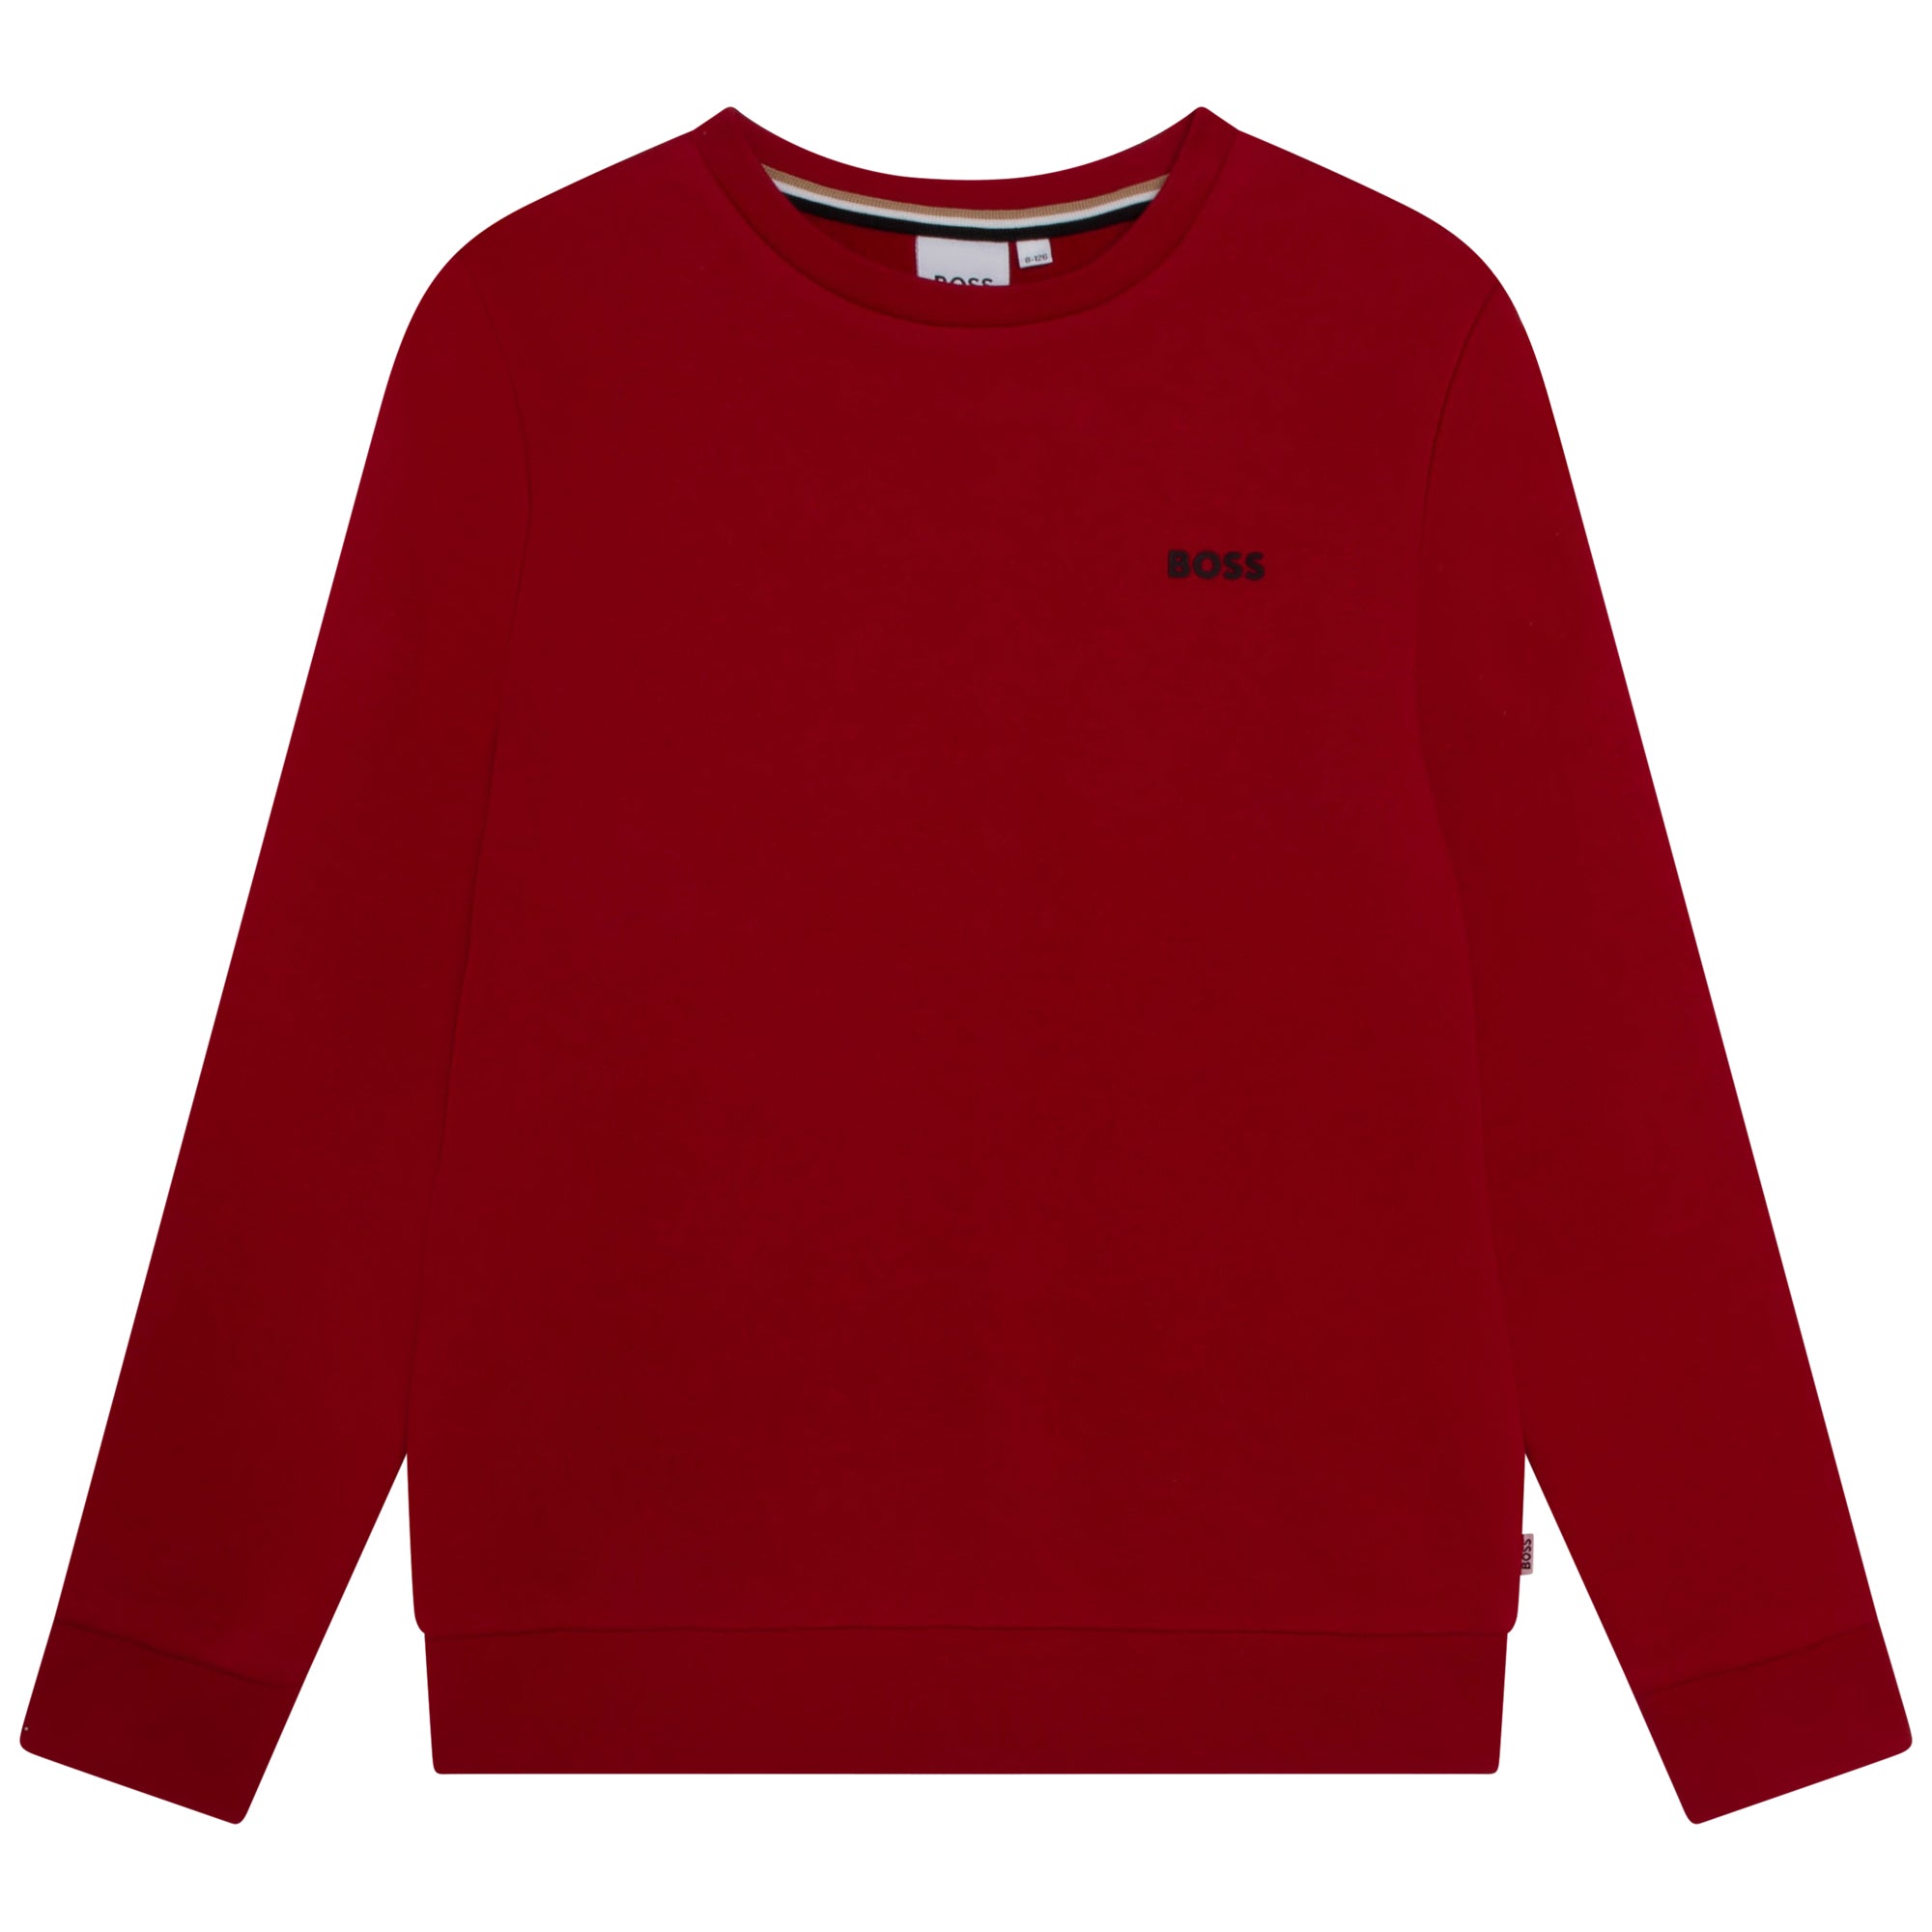 Hugo Boss Kids Classic Sweater Red